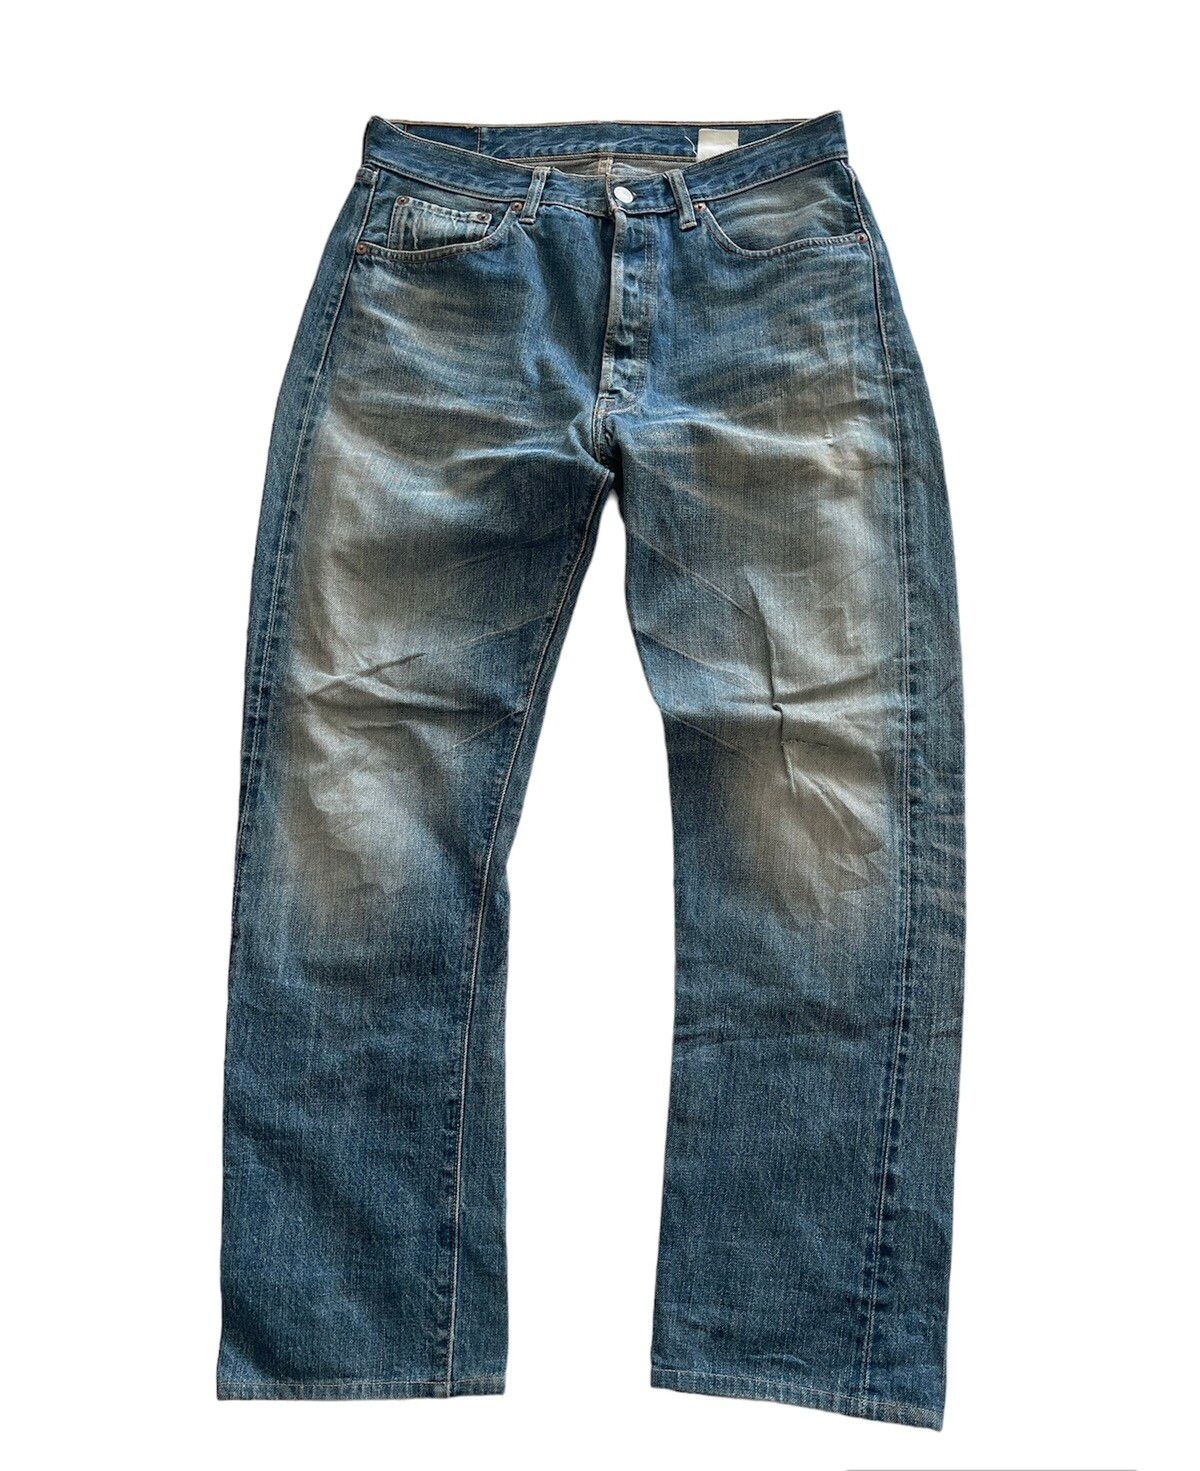 Vintage Sugar Cane Selvedge Denim Jeans - 1